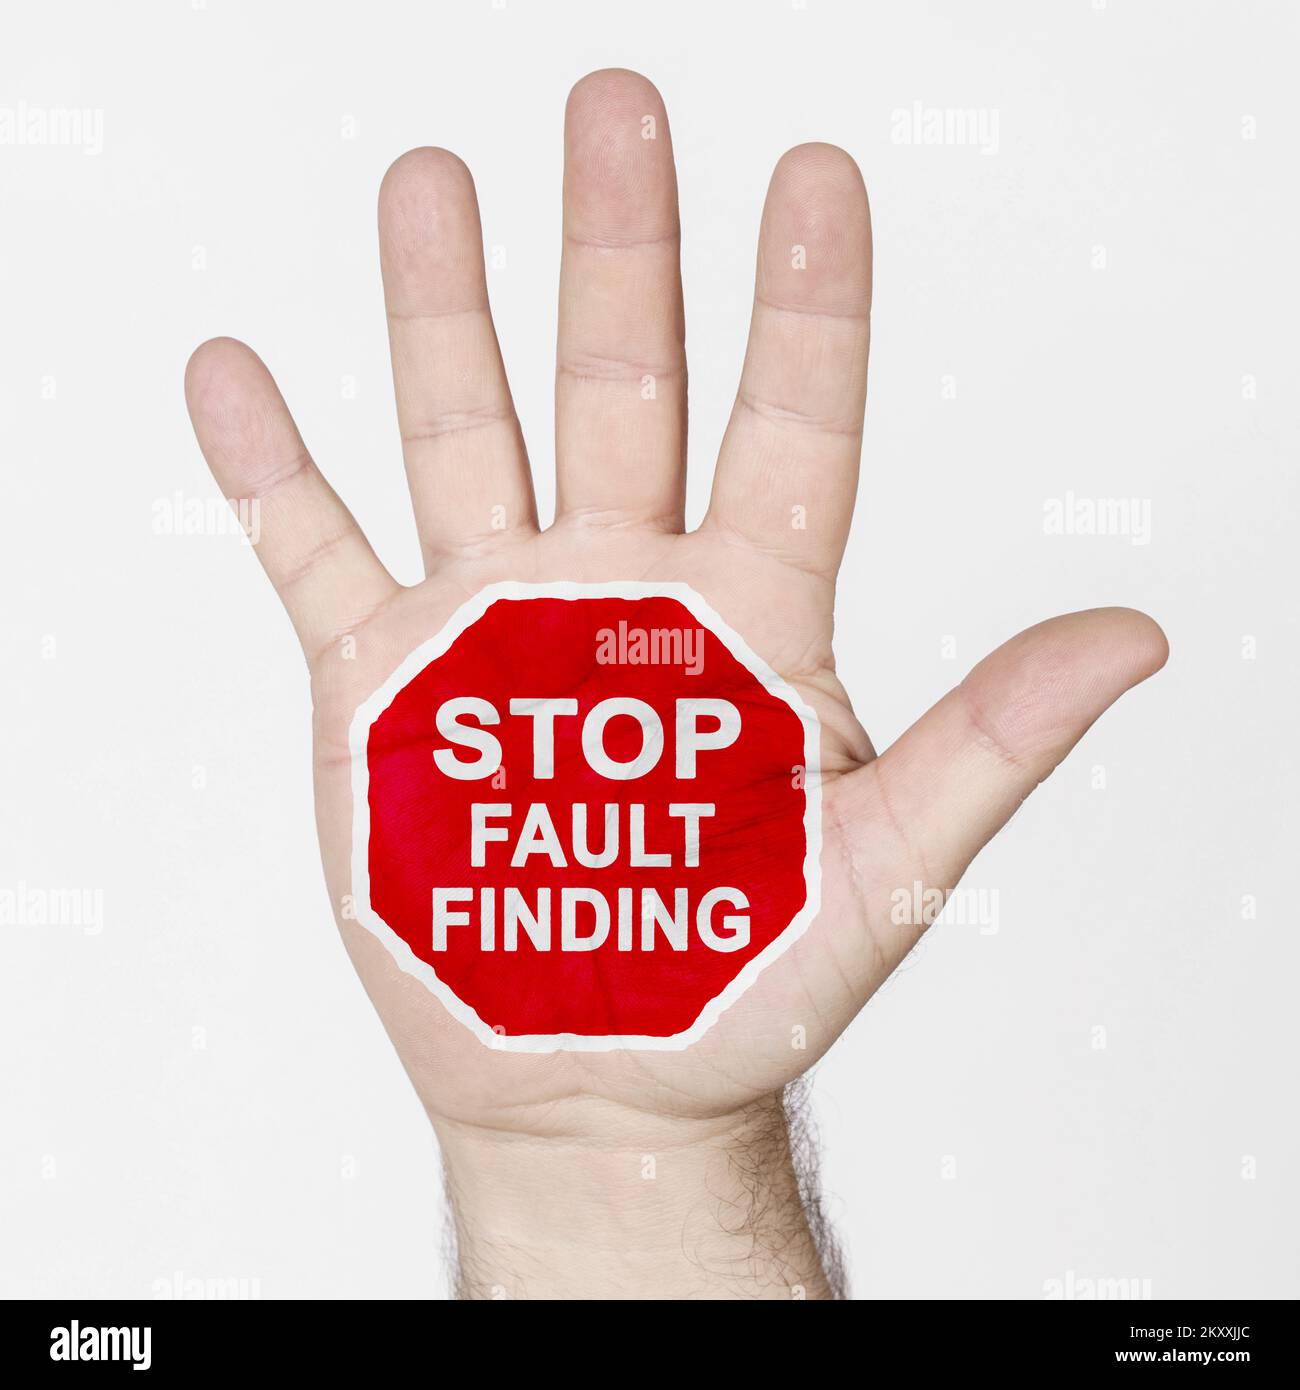 Sul palmo della mano c'è un segnale di stop con l'iscrizione - DIAGNOSI STOP. Isolato su sfondo bianco. Foto Stock